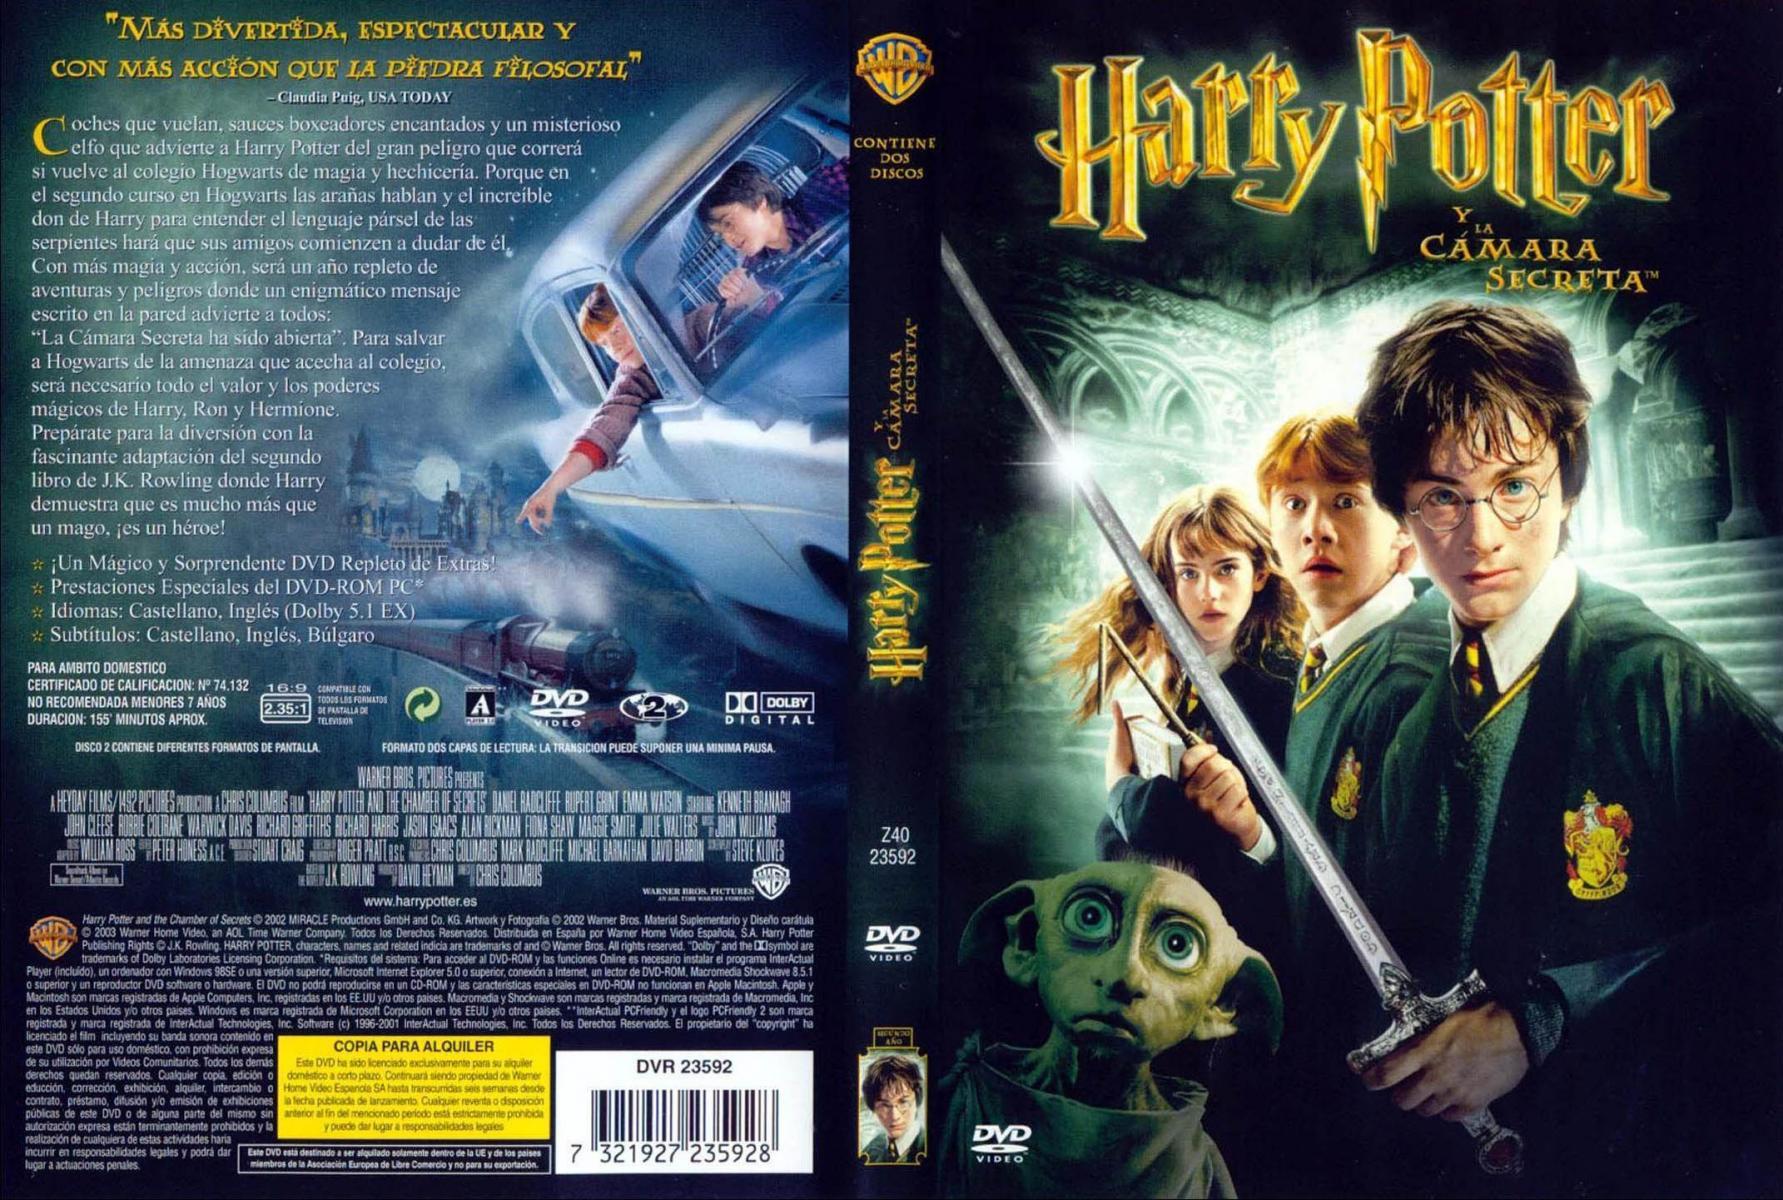 Harry Potter y la cámara secreta': mucho más importante de lo que